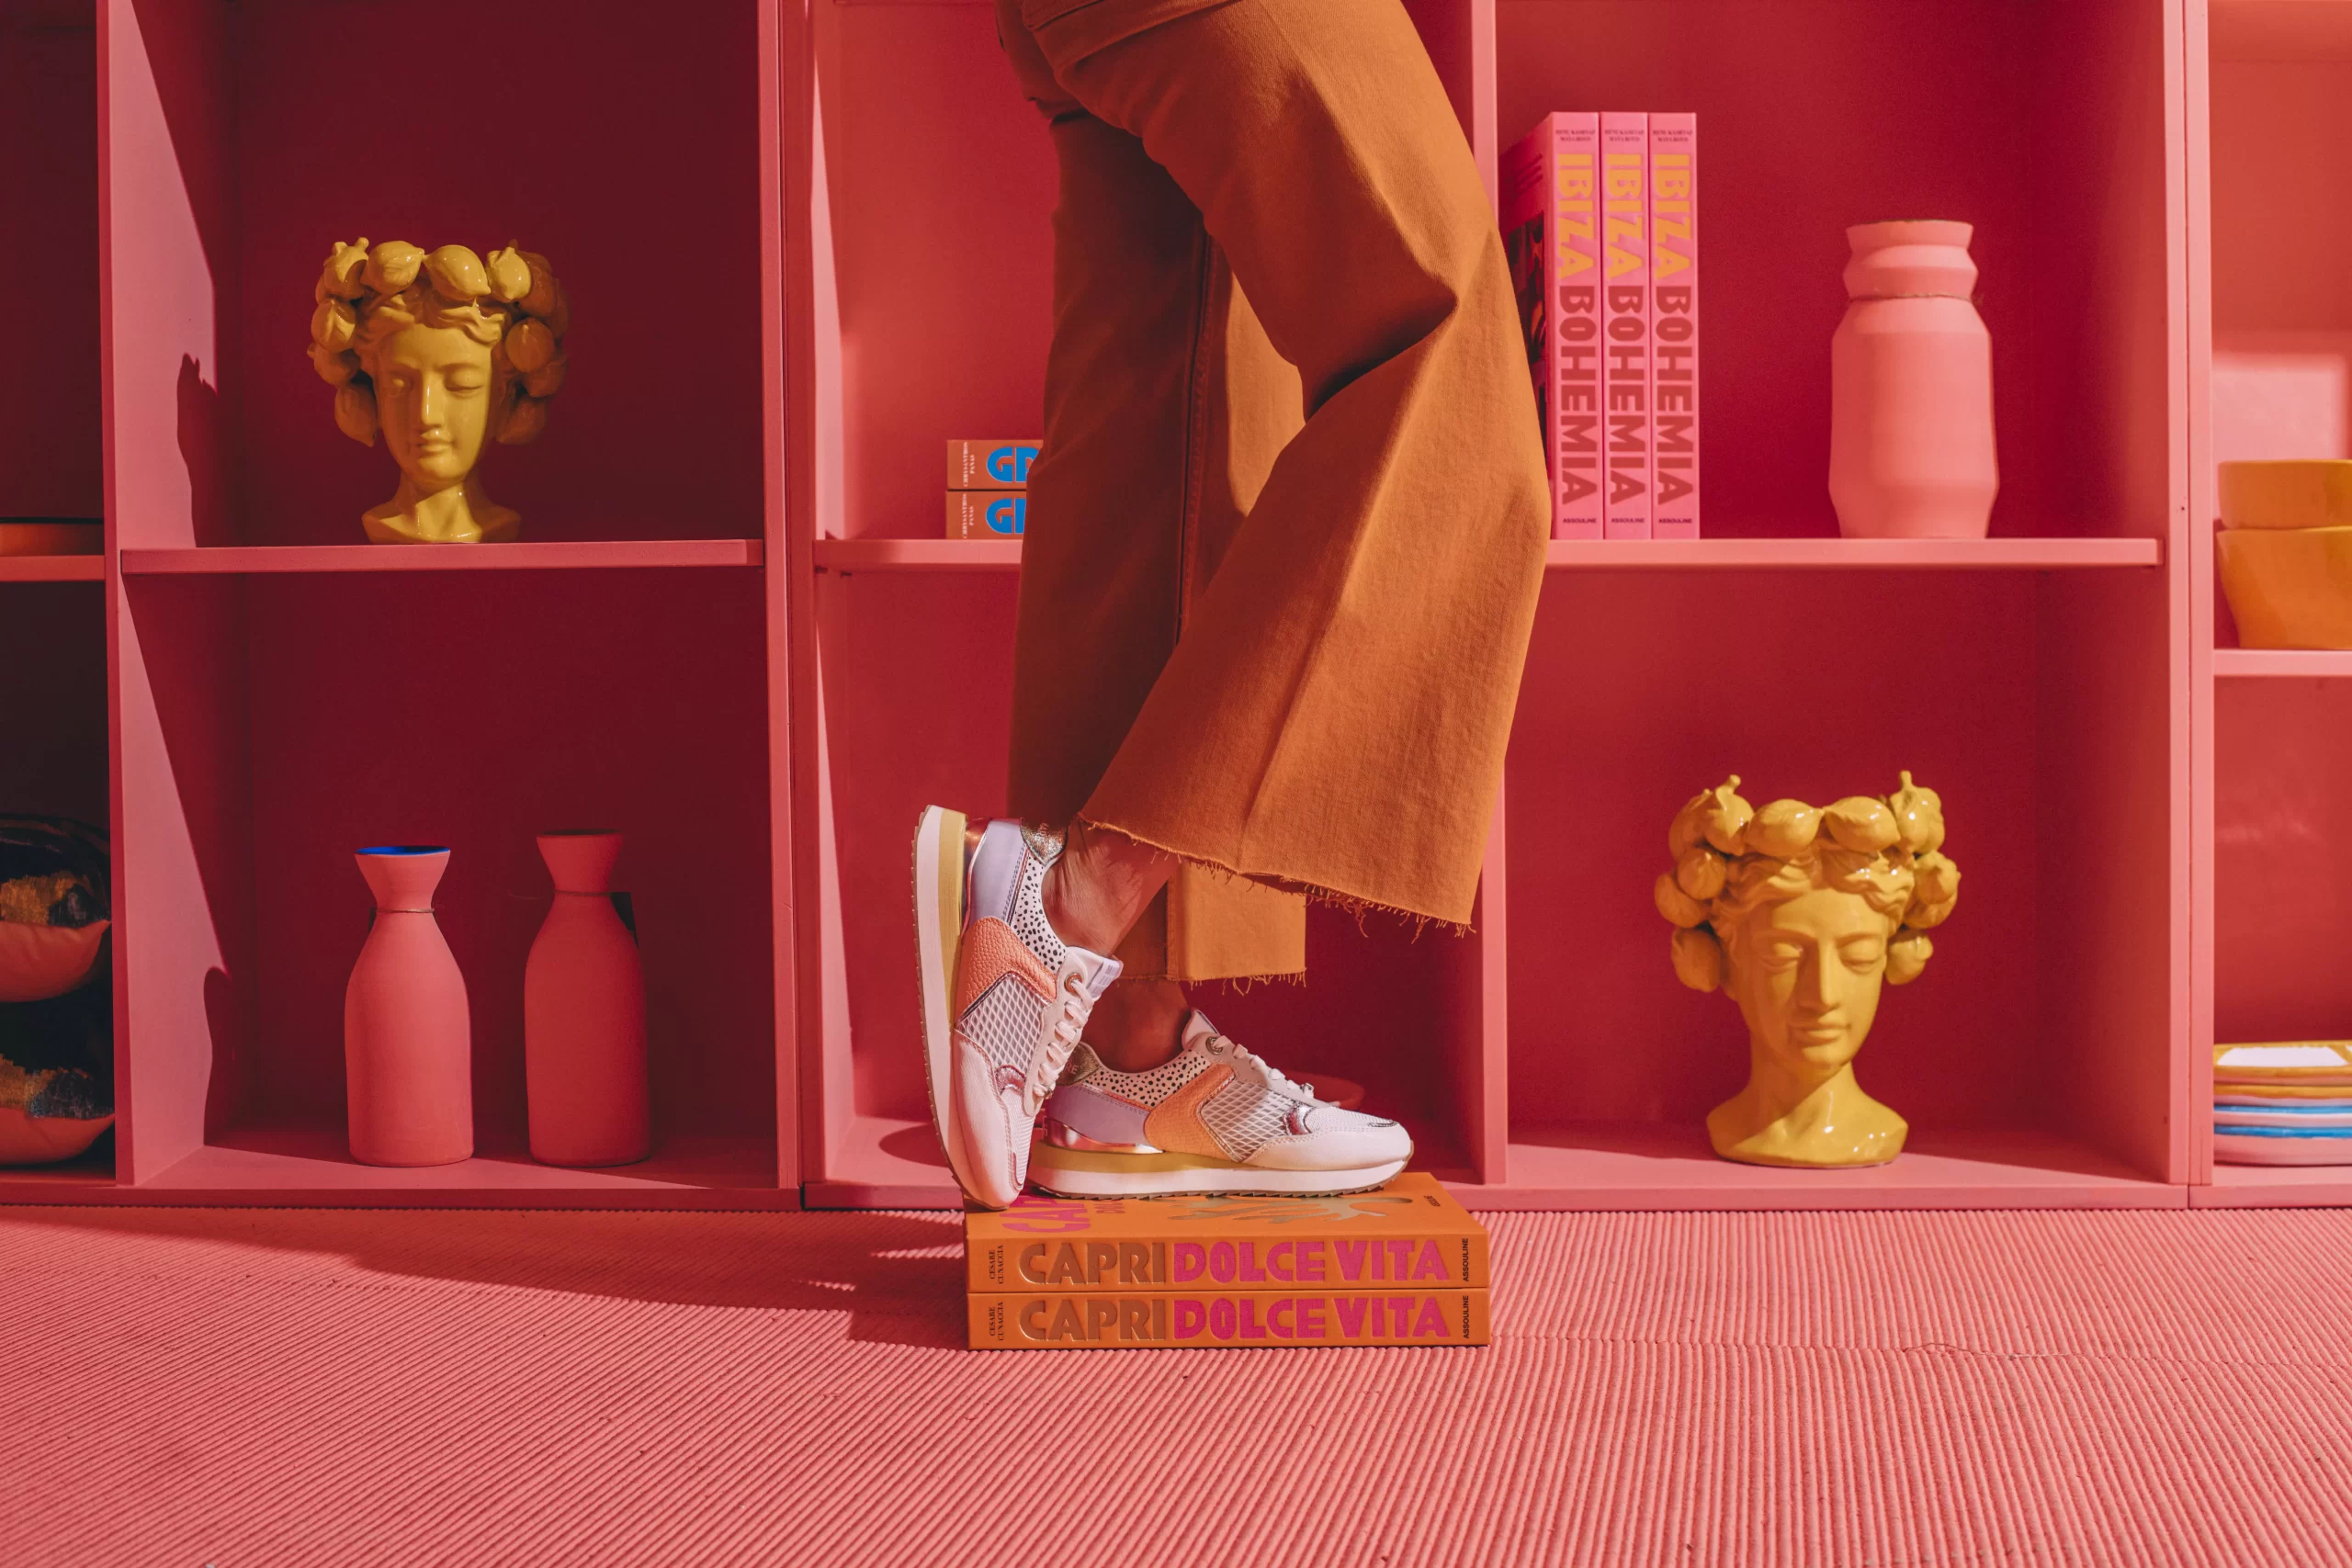 Campaña Publicidad de Calzado, Moda MARIAMARE - Contenido audiovisual para la marca